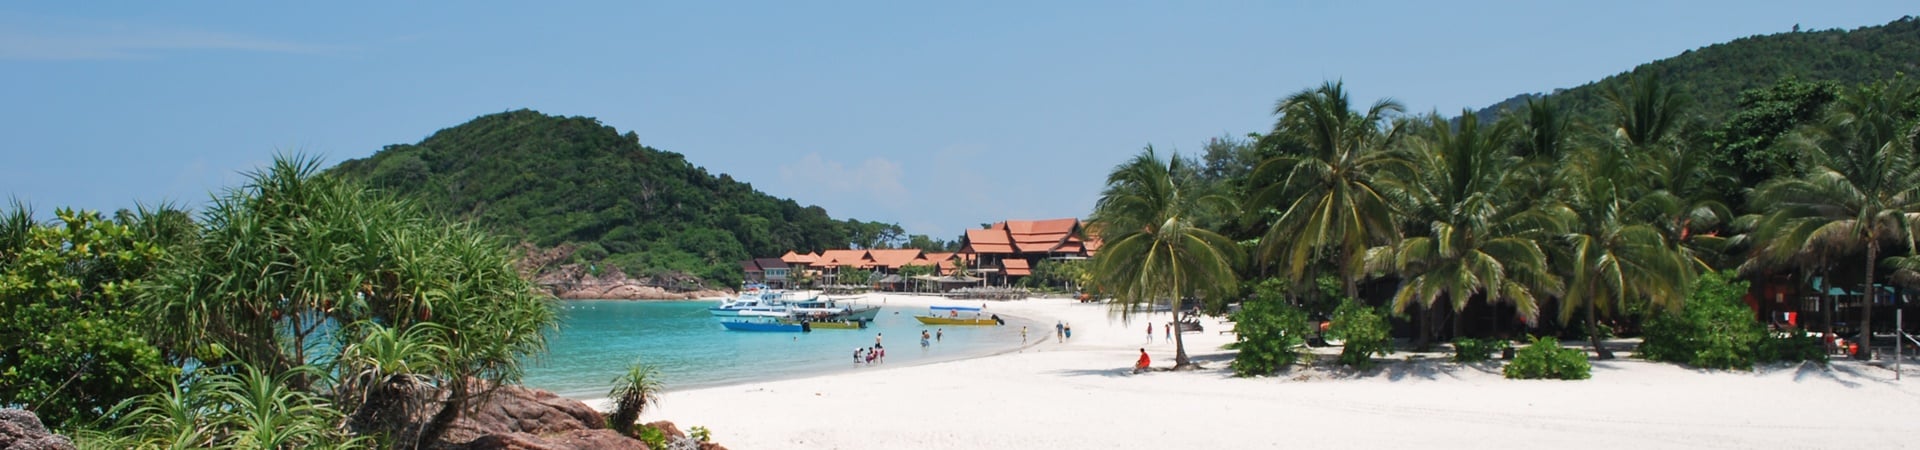 Image of Beach Break at Pulau Redang